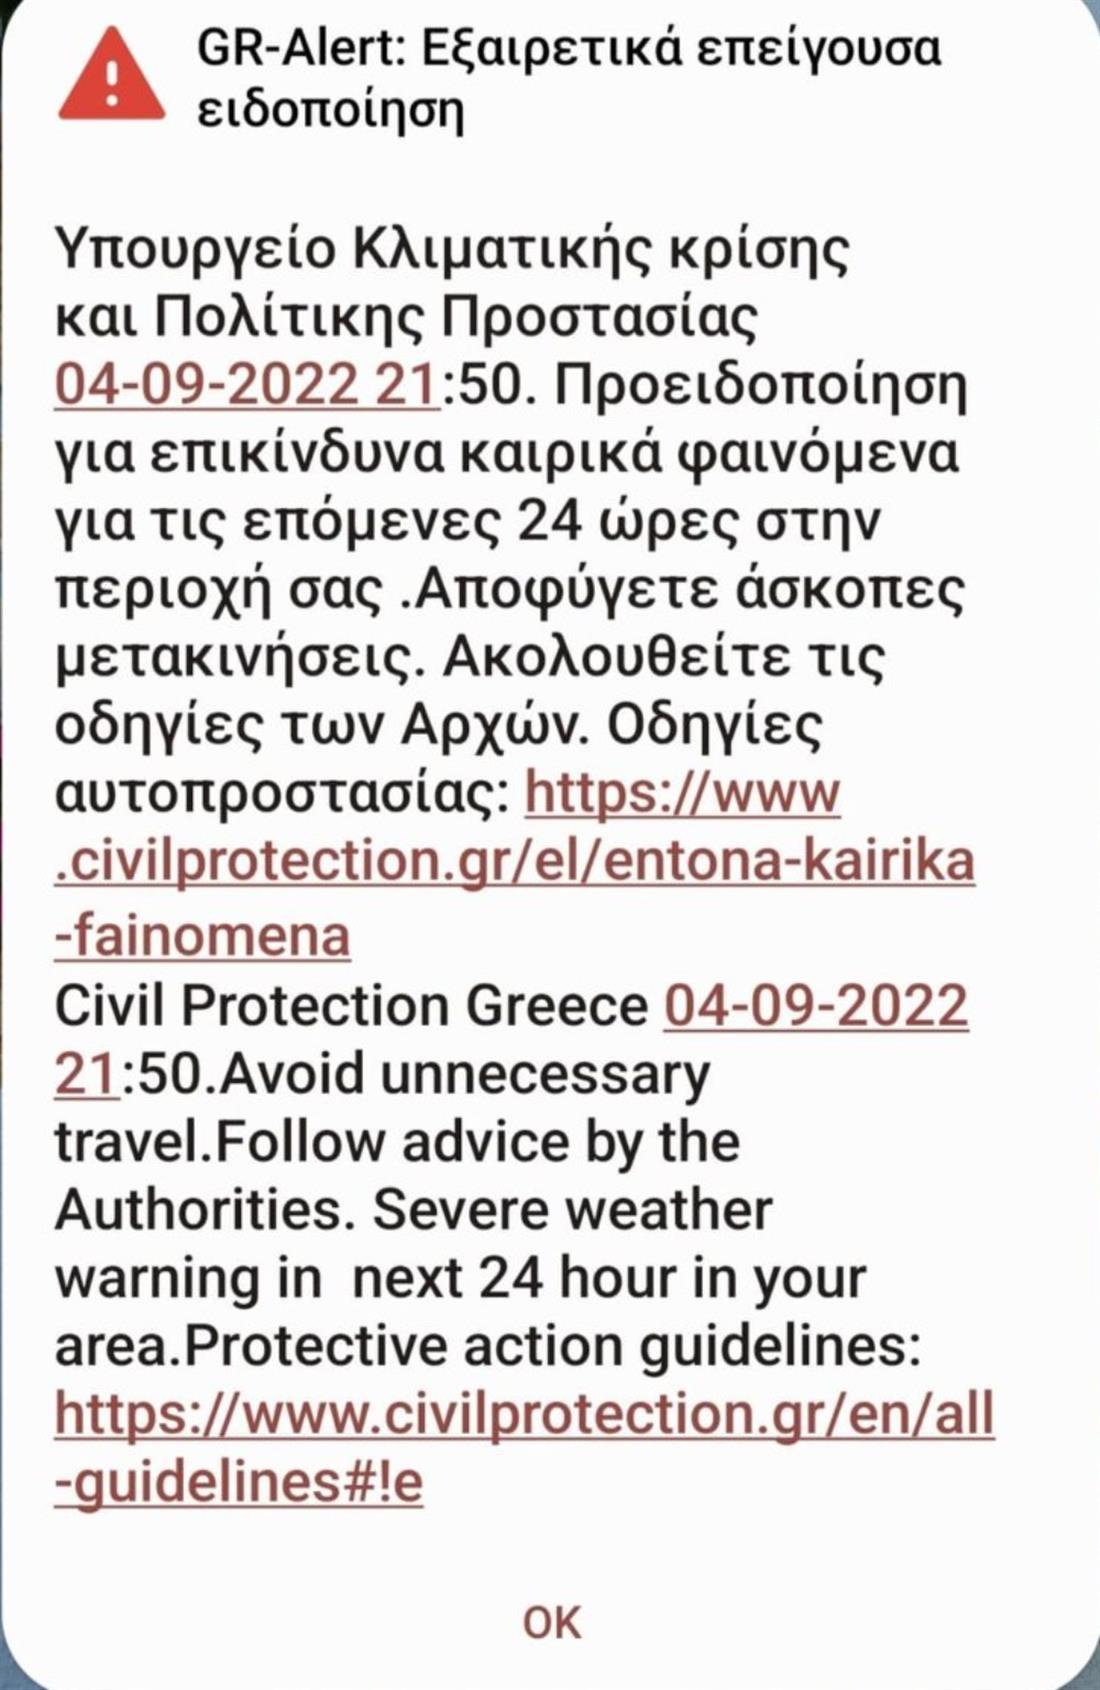 Κακοκαιρία - Θεσσαλονίκη - μήνυμα 112